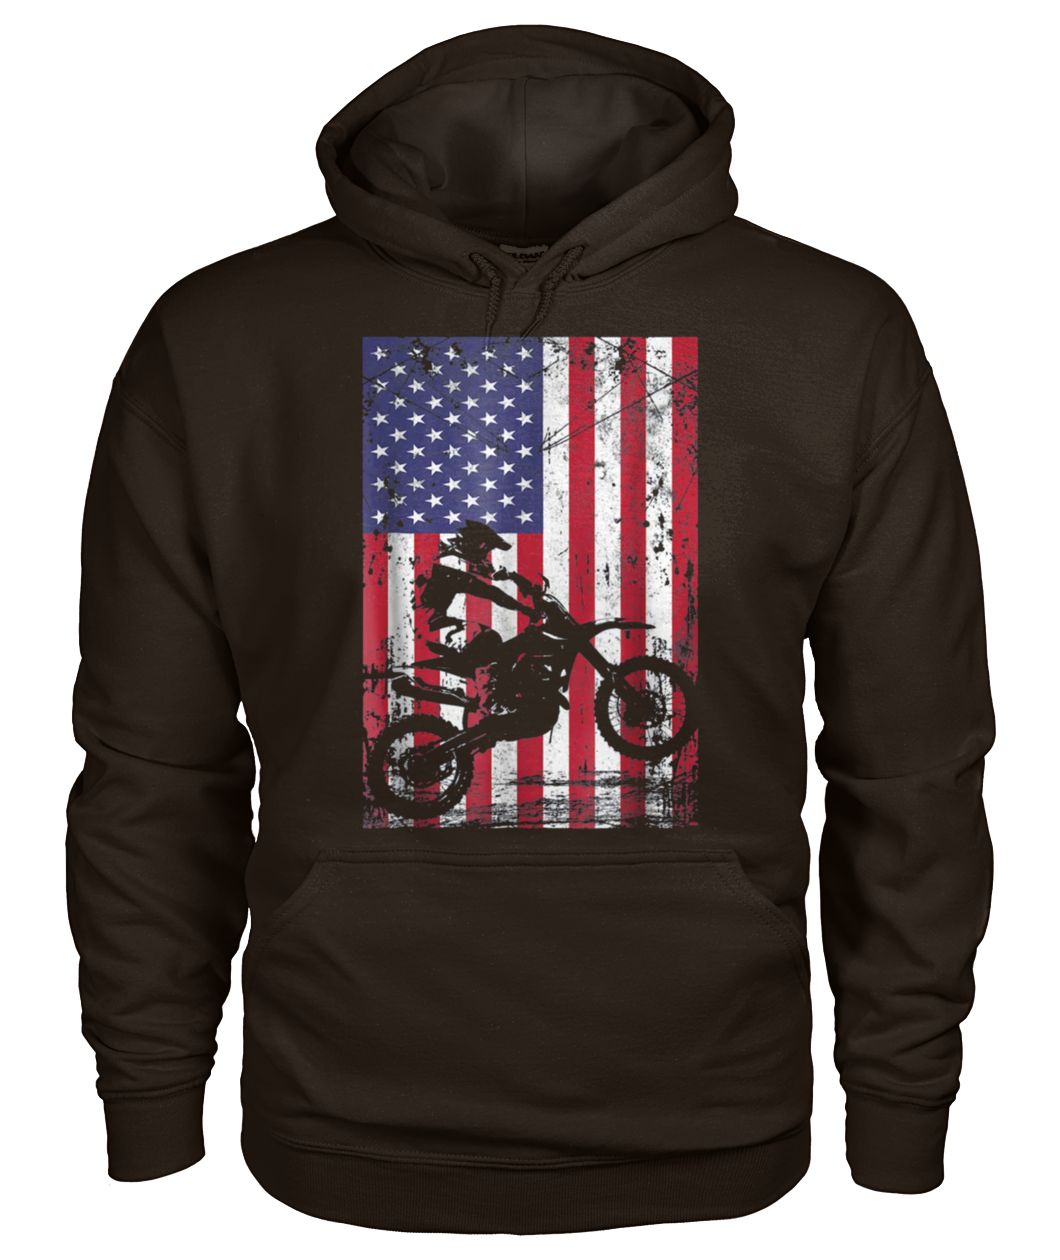 Dirt bike american flag 4th of july gildan hoodie